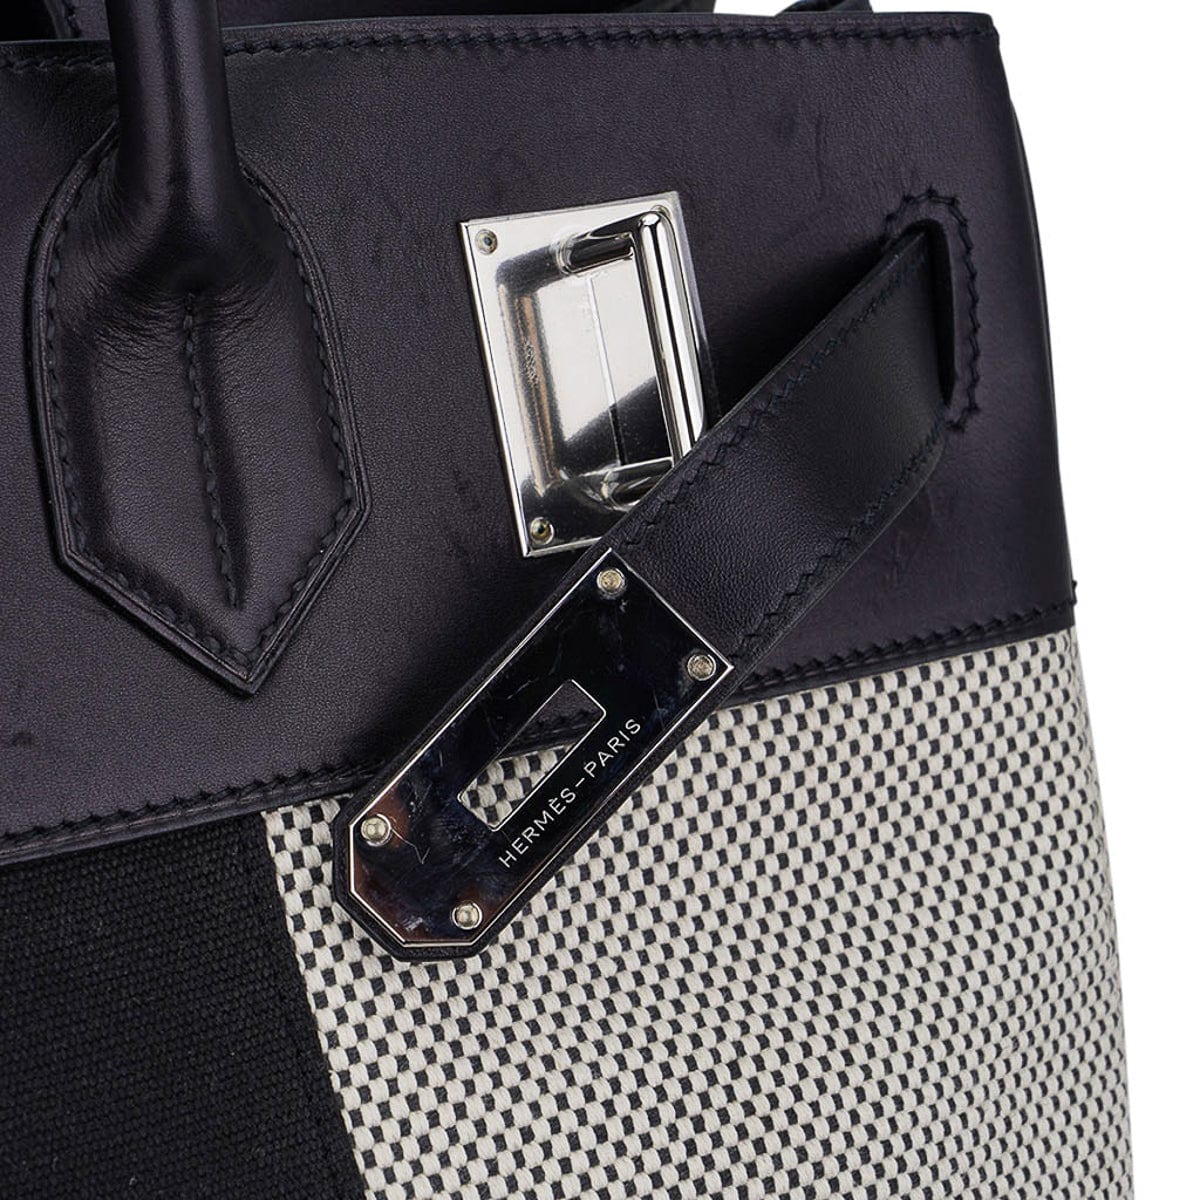 Hermès Pre-owned Haut à Courroies 40 Handbag - Black